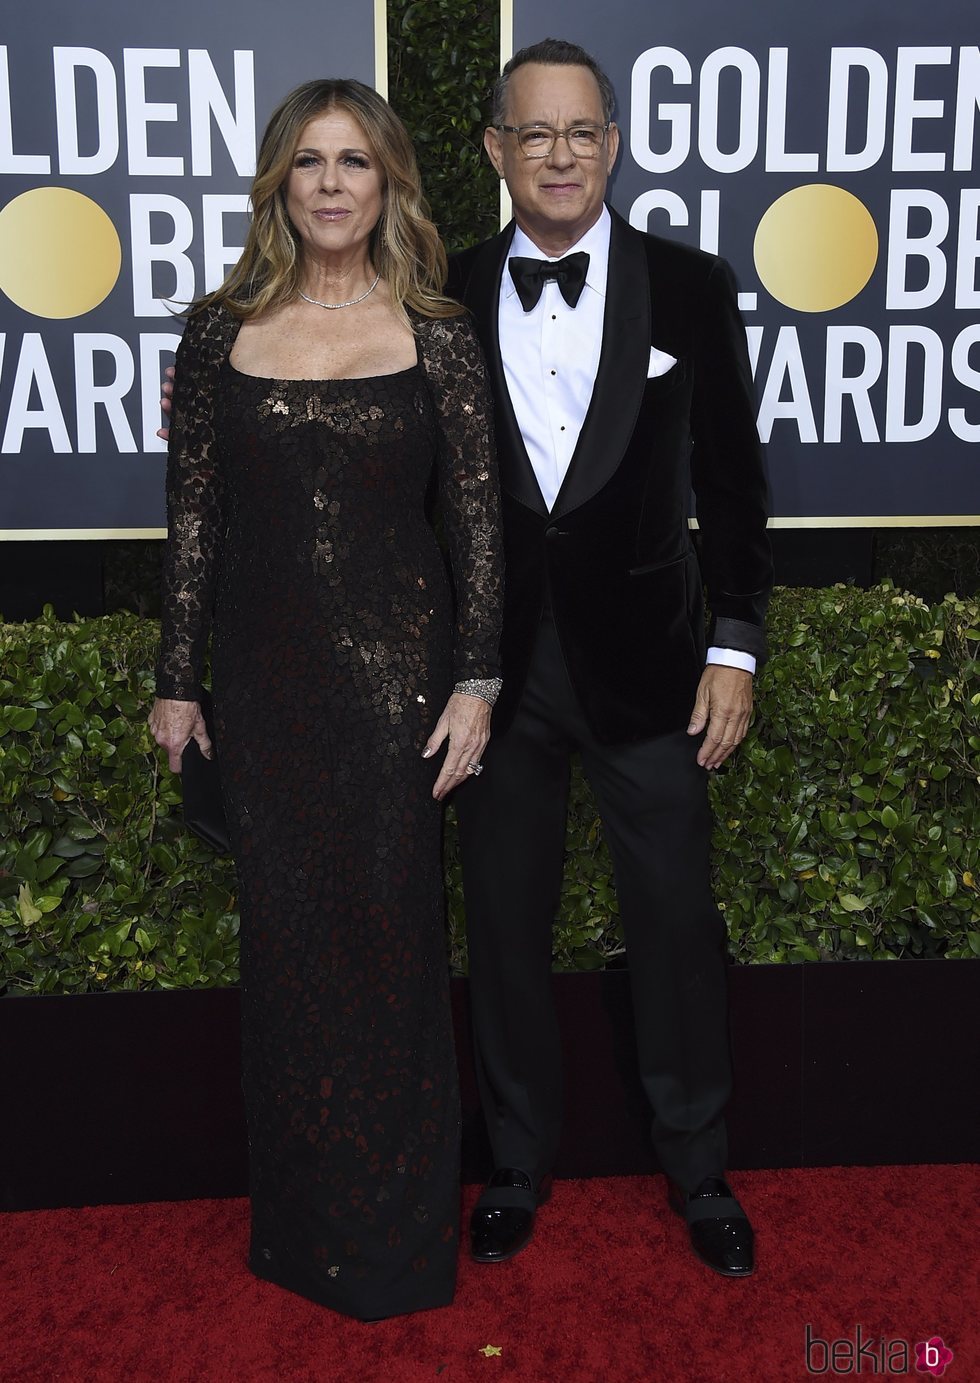 Tom Hanks y Rita Wilson en la alfombra roja de los Globos de Oro 2020